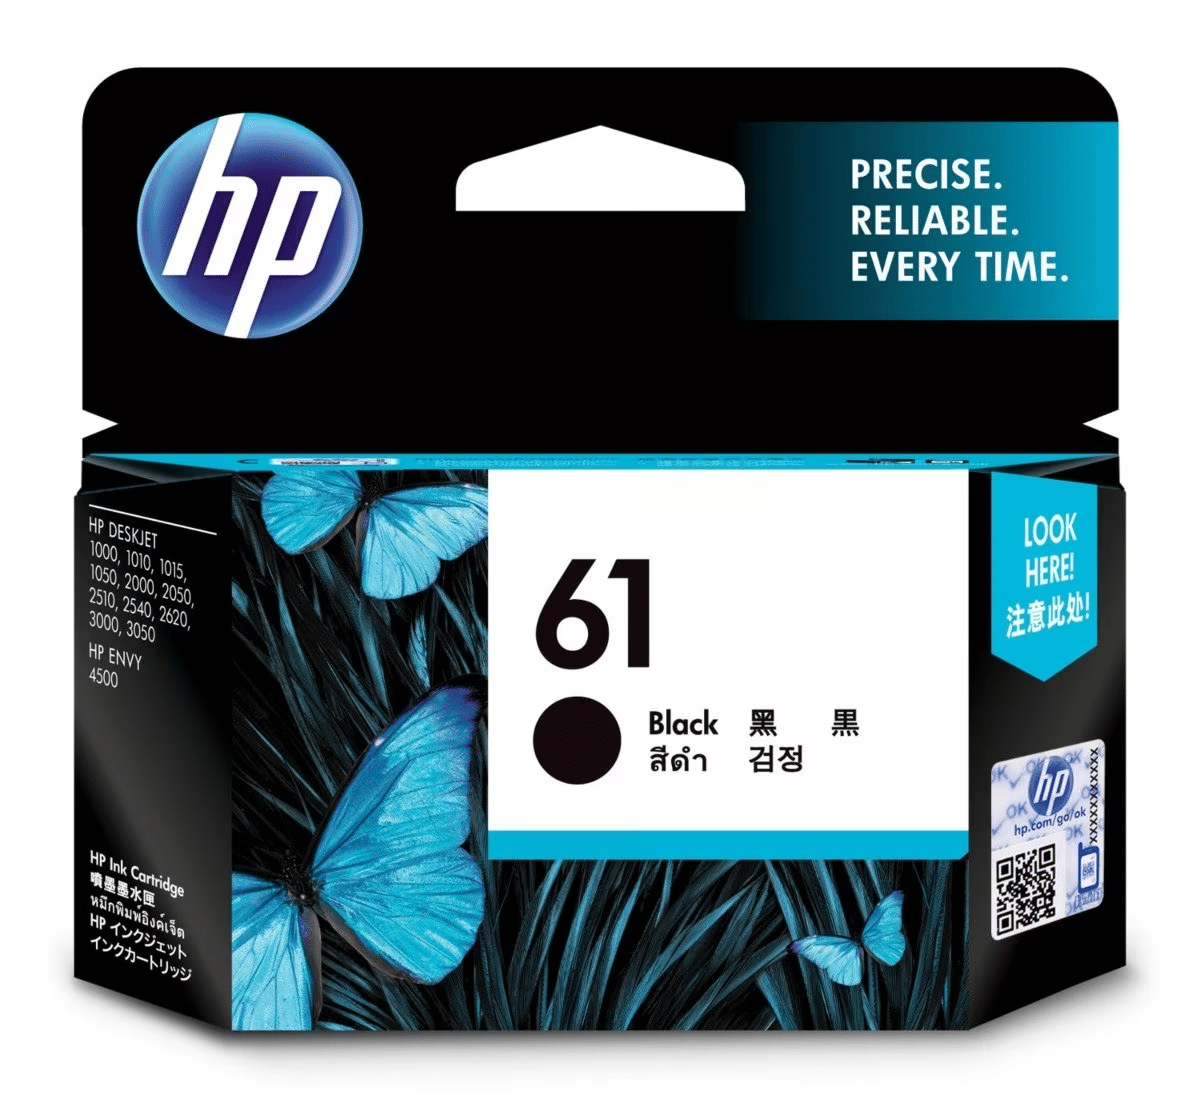 Black Ink Cartridge: HP 61 Black